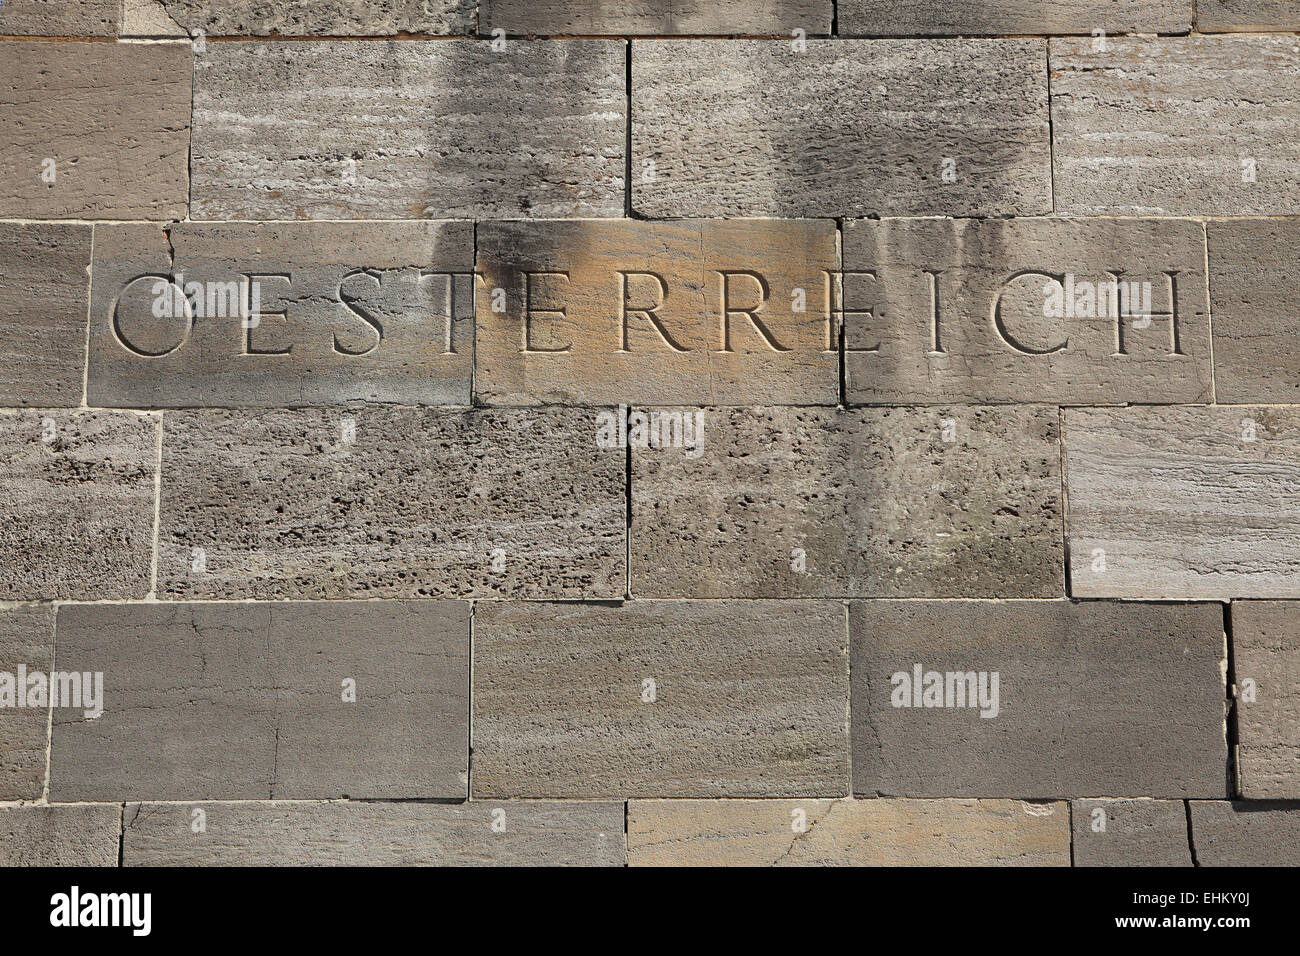 Osterreich (Austria). Palabra tallados en los bloques de piedra. Foto de stock